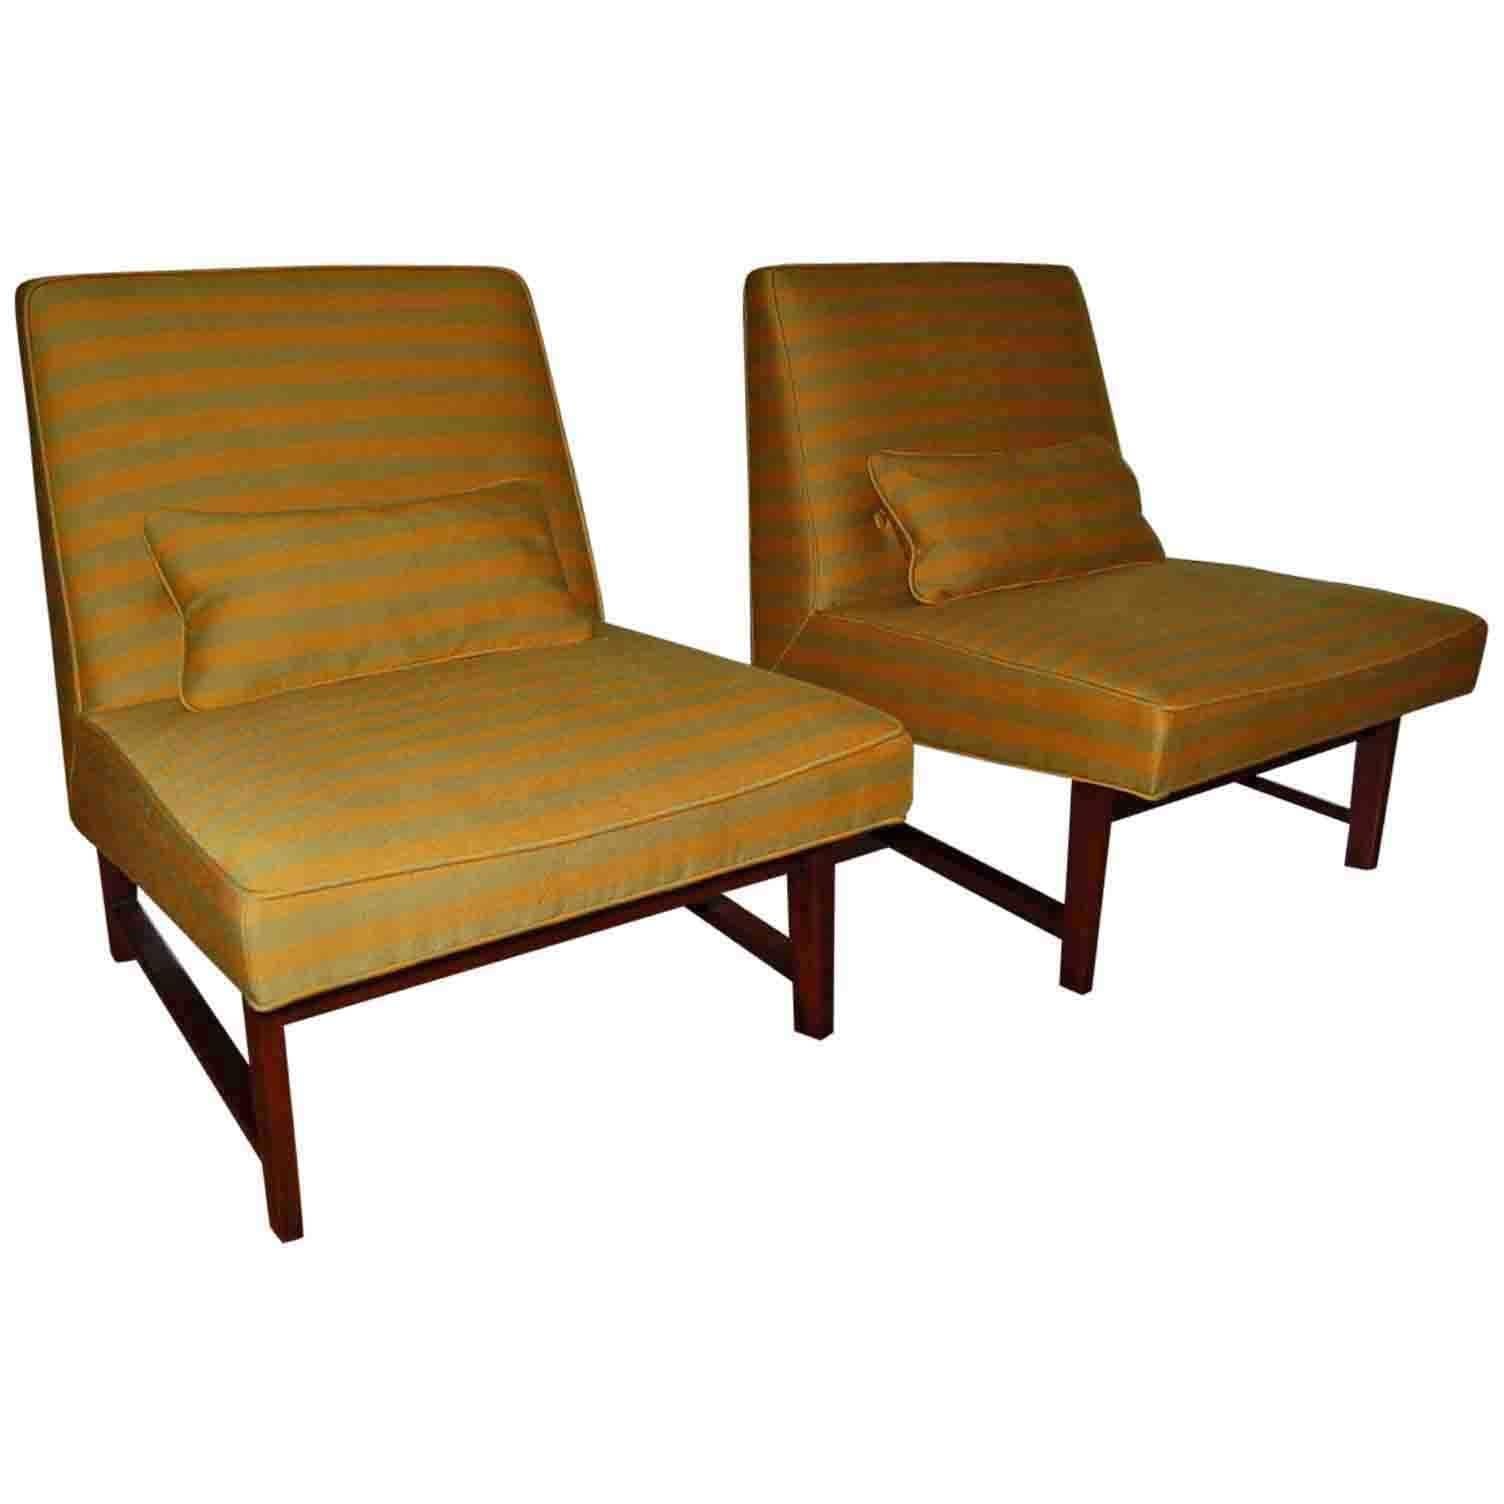 Green Striped Slipper Chair Pair by Dunbar For Sale